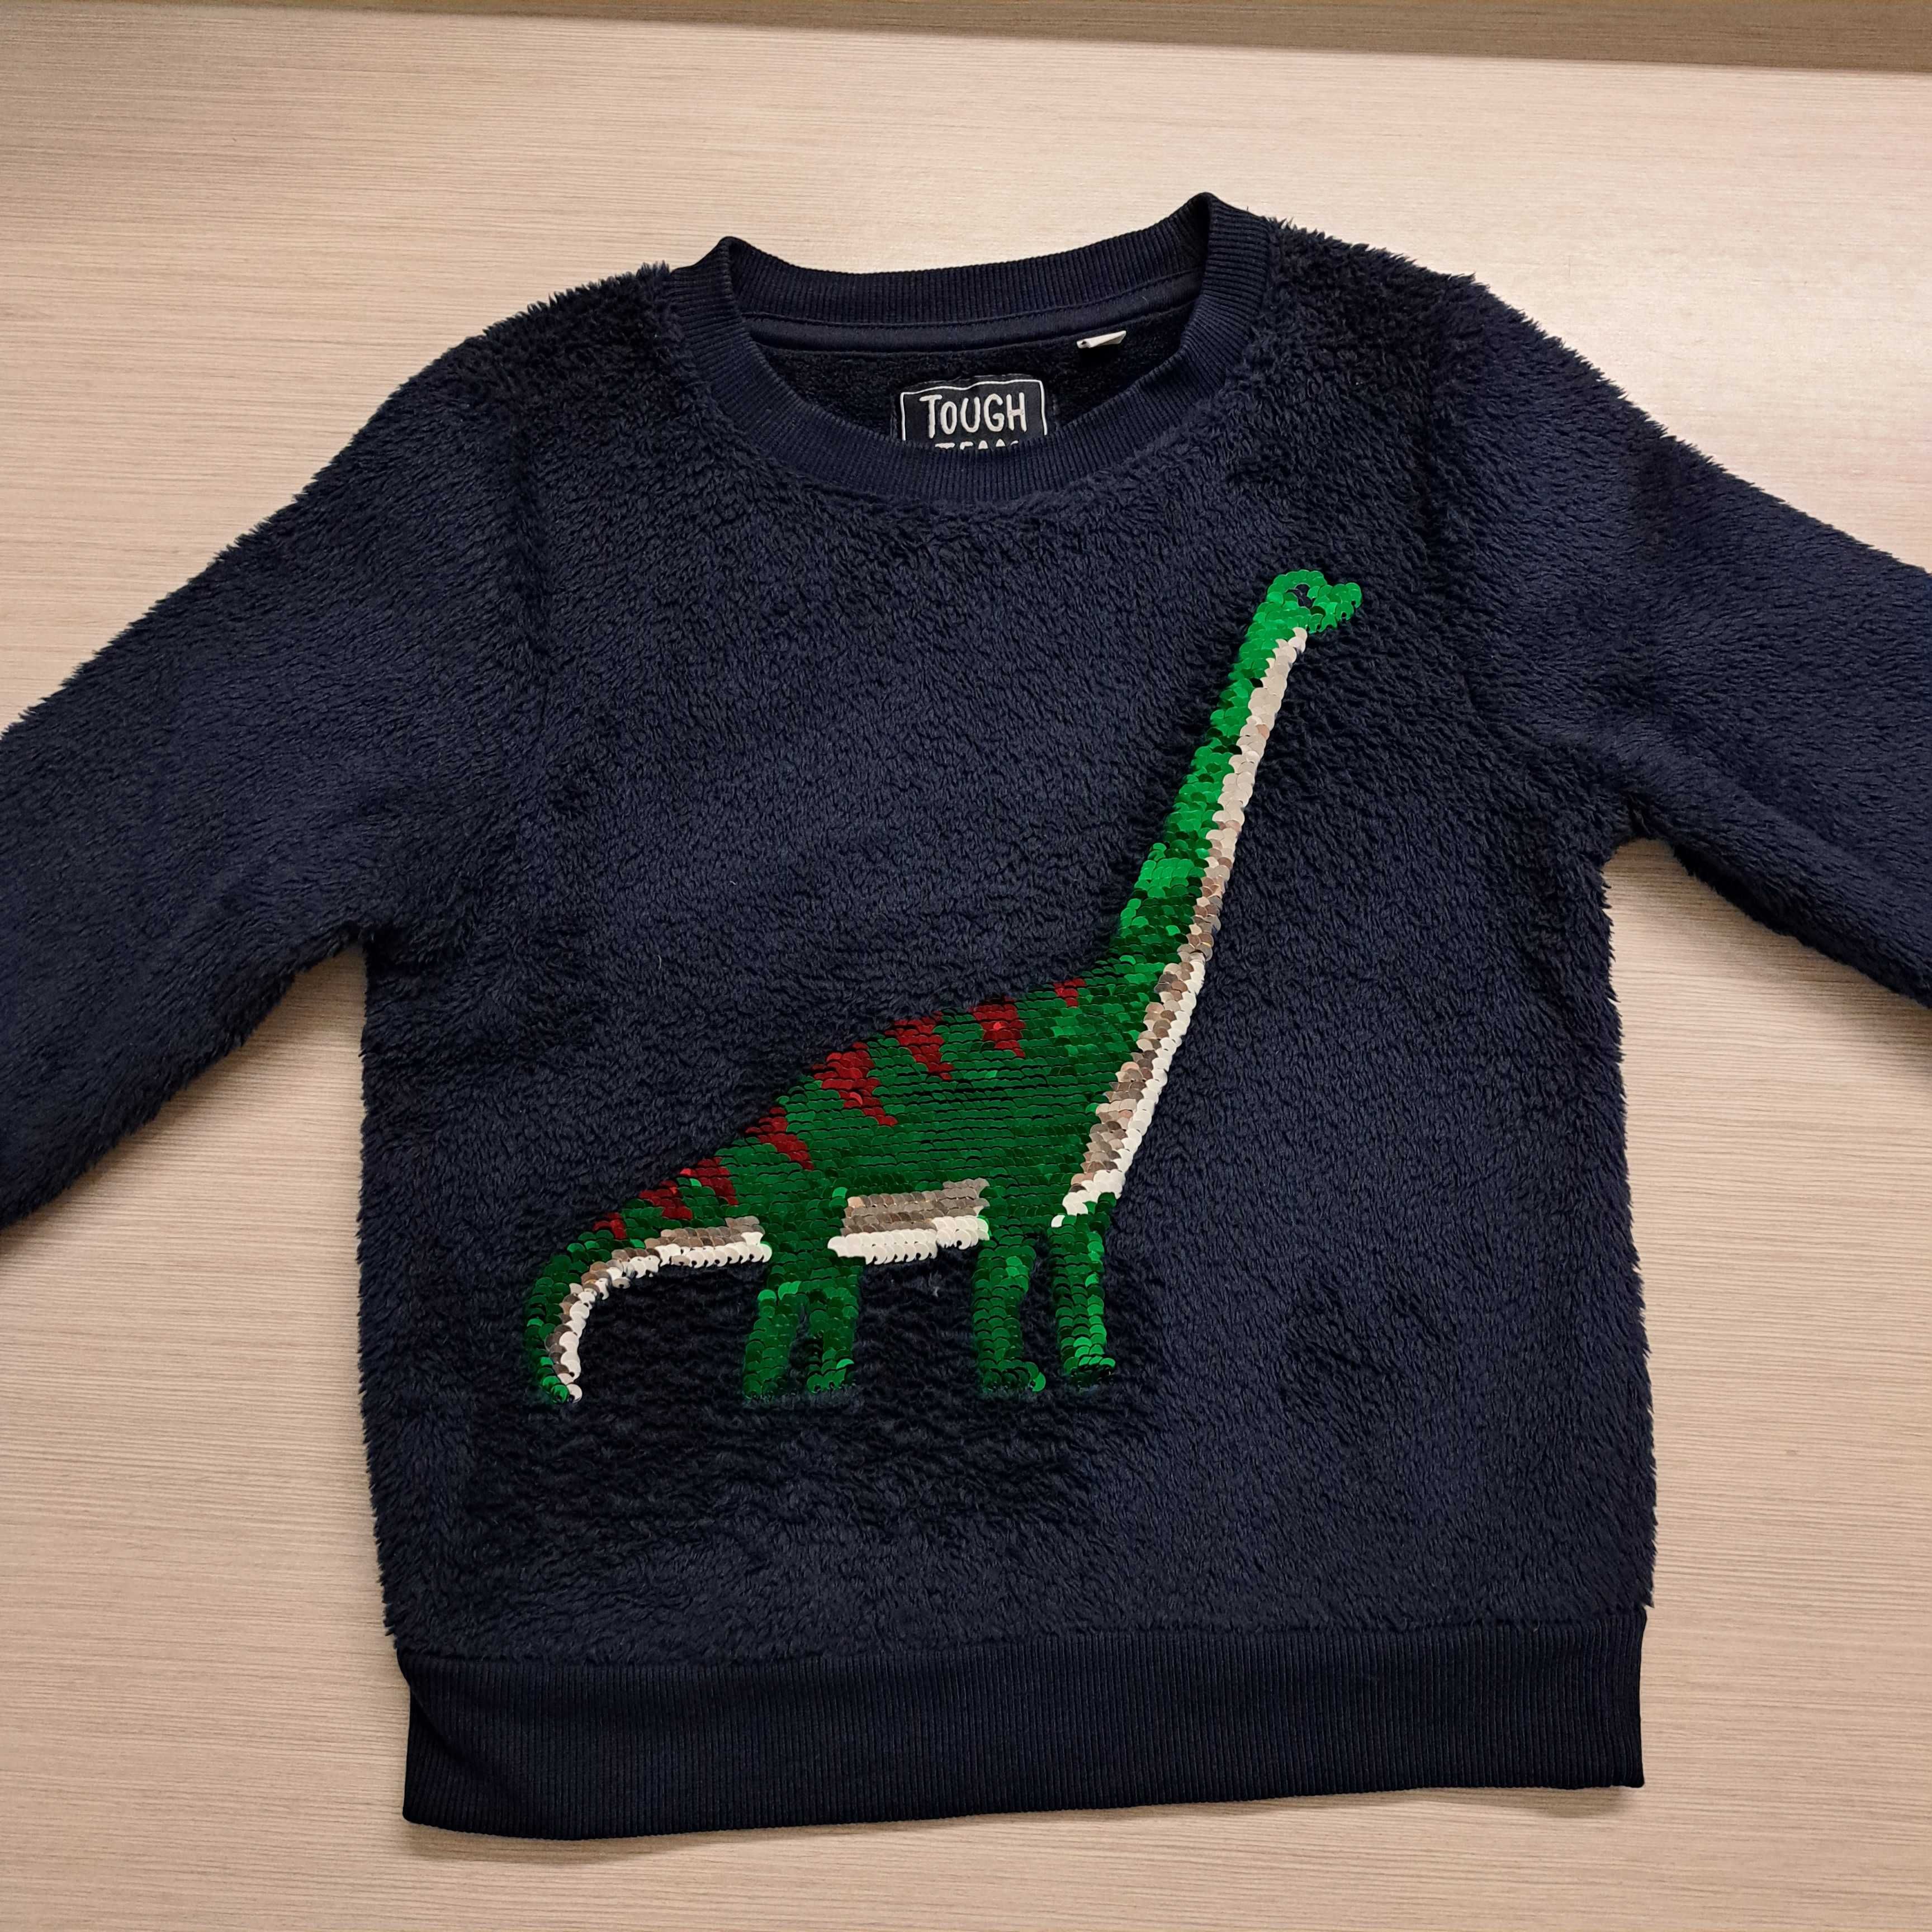 Bluza chłopięca, C&A 104, dinozaur, cekiny